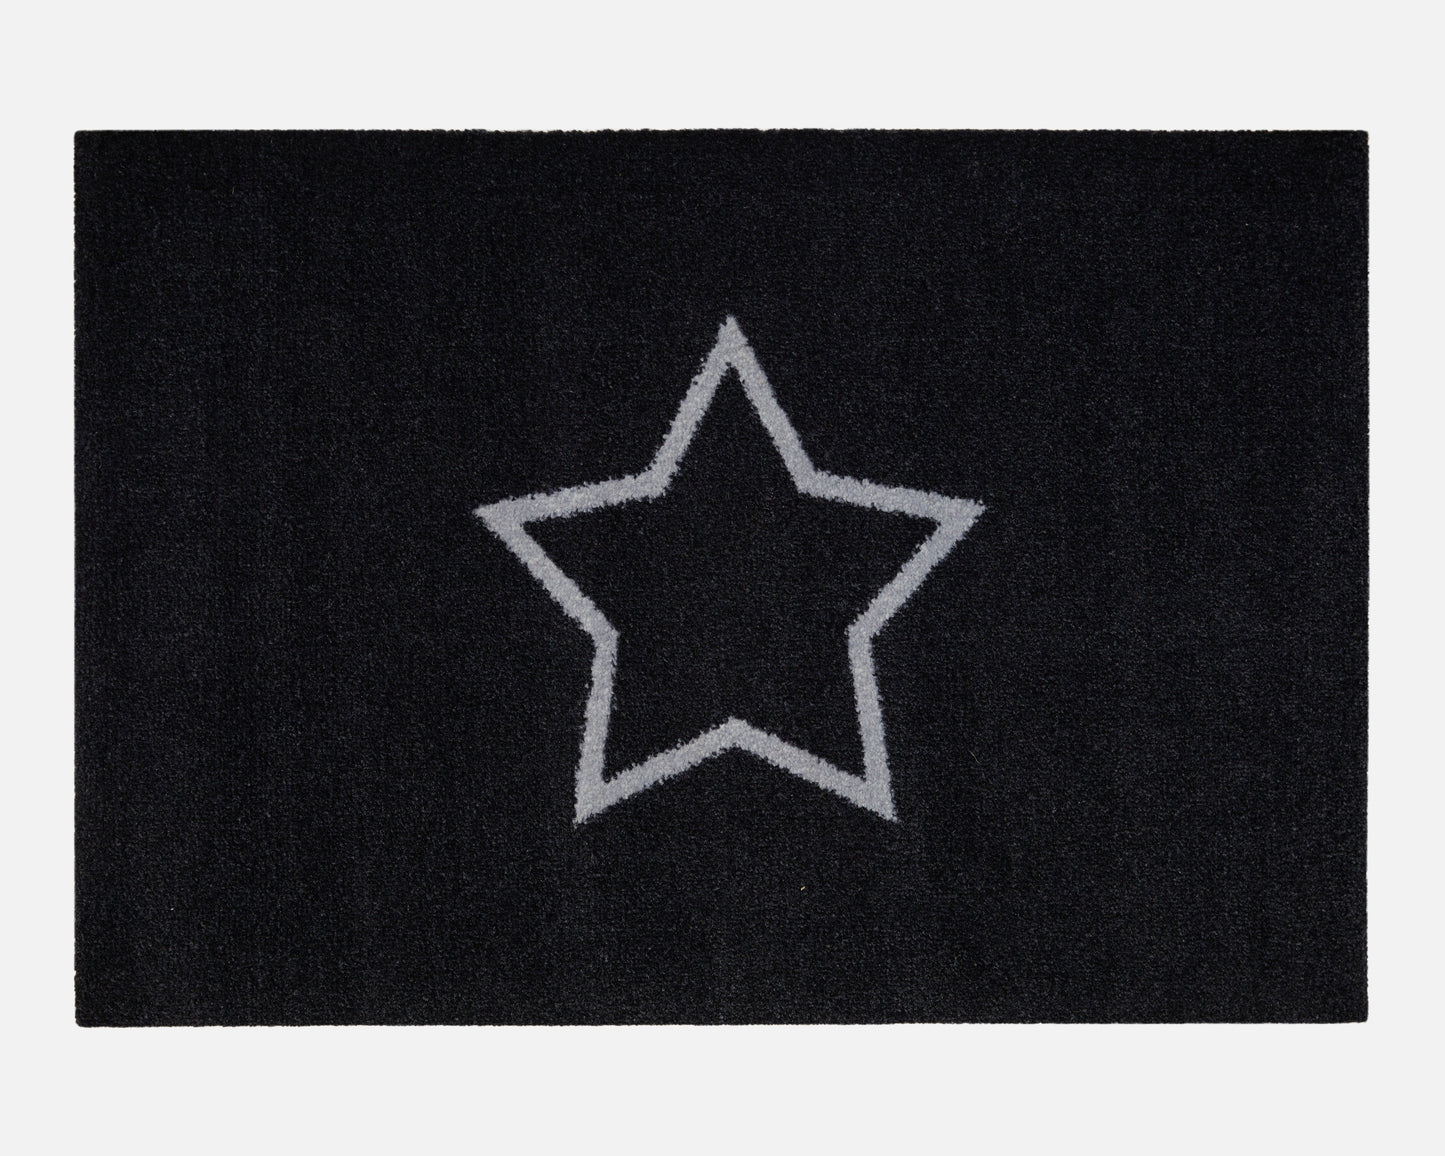 Star Doormat | Black